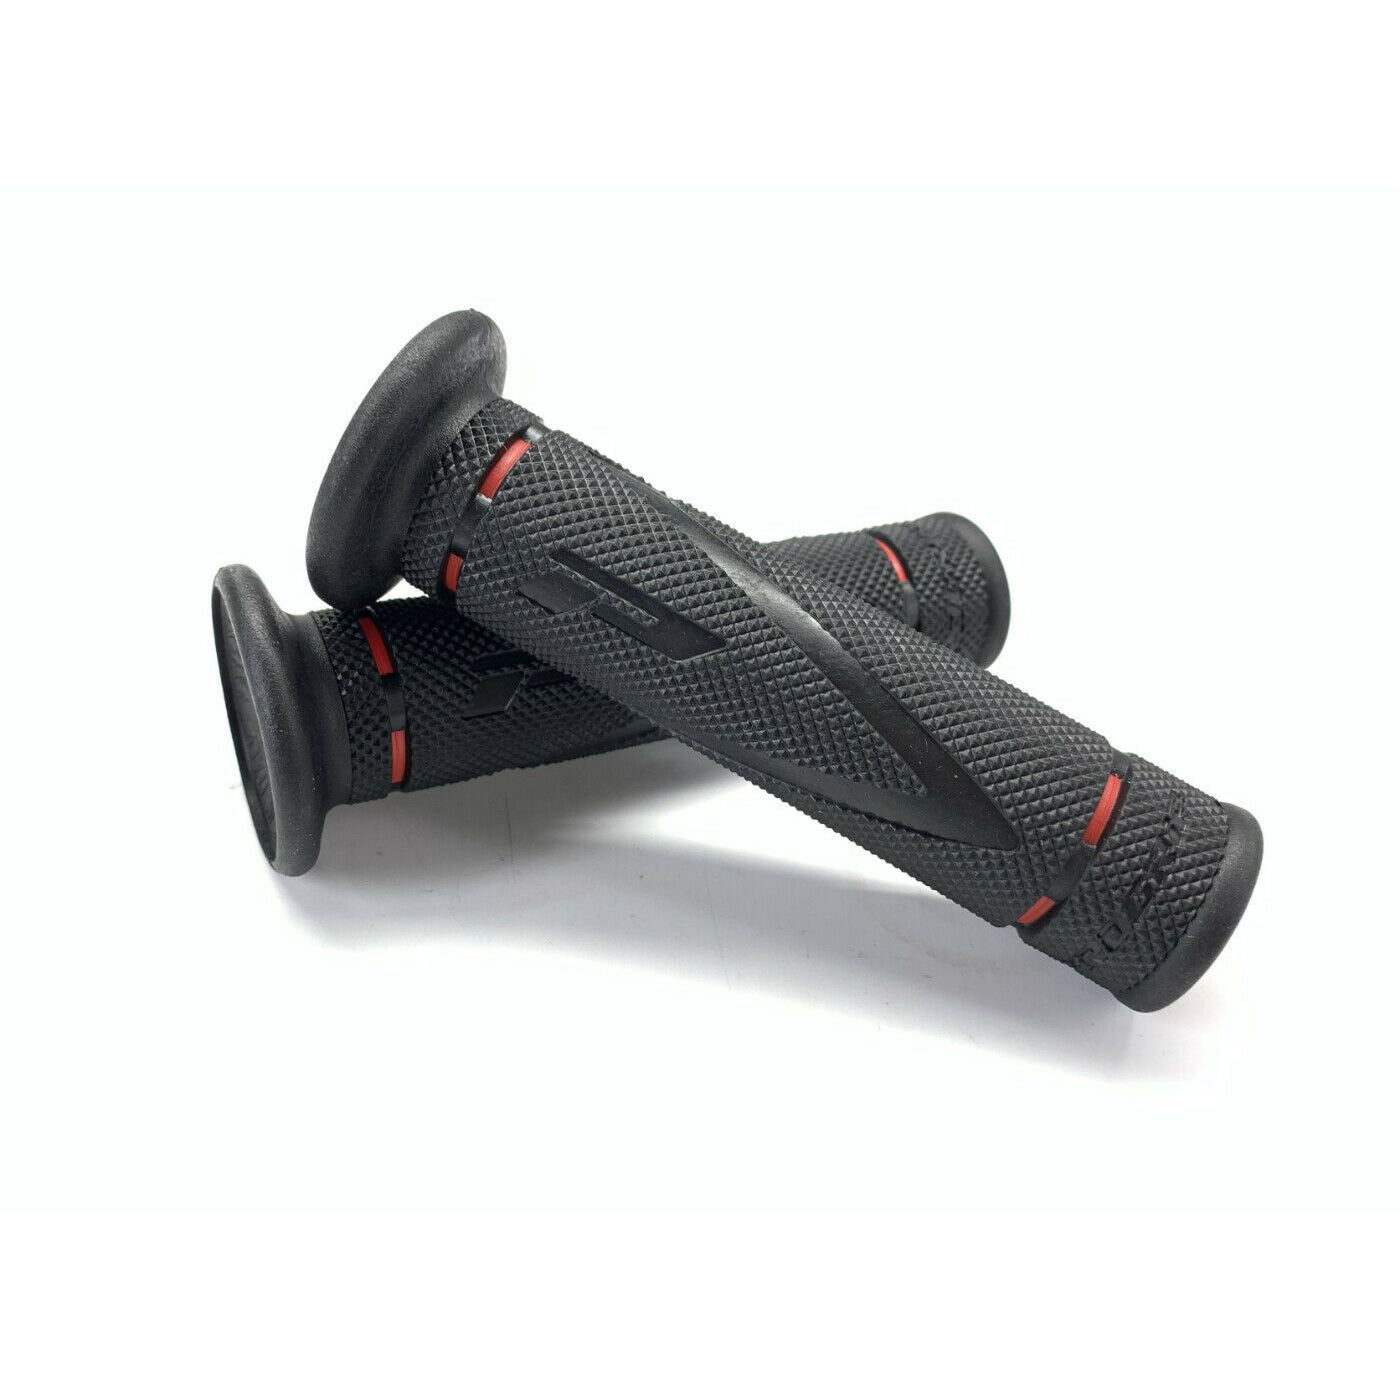 Pro Grip Trials 838 Grips Black Red - Pro Grip